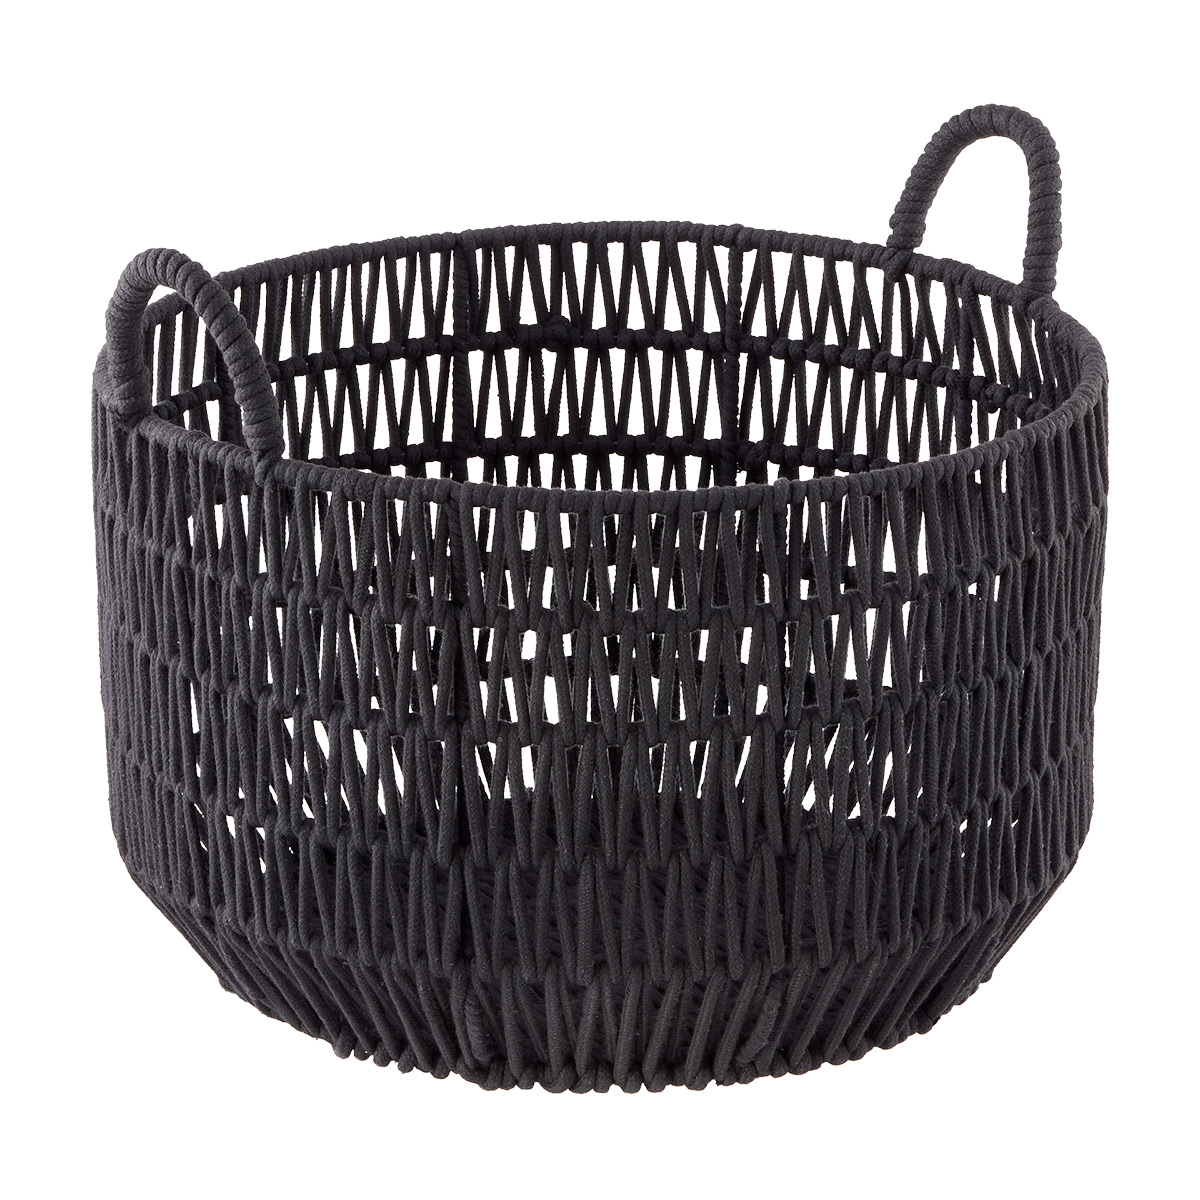 Luna Basket Black